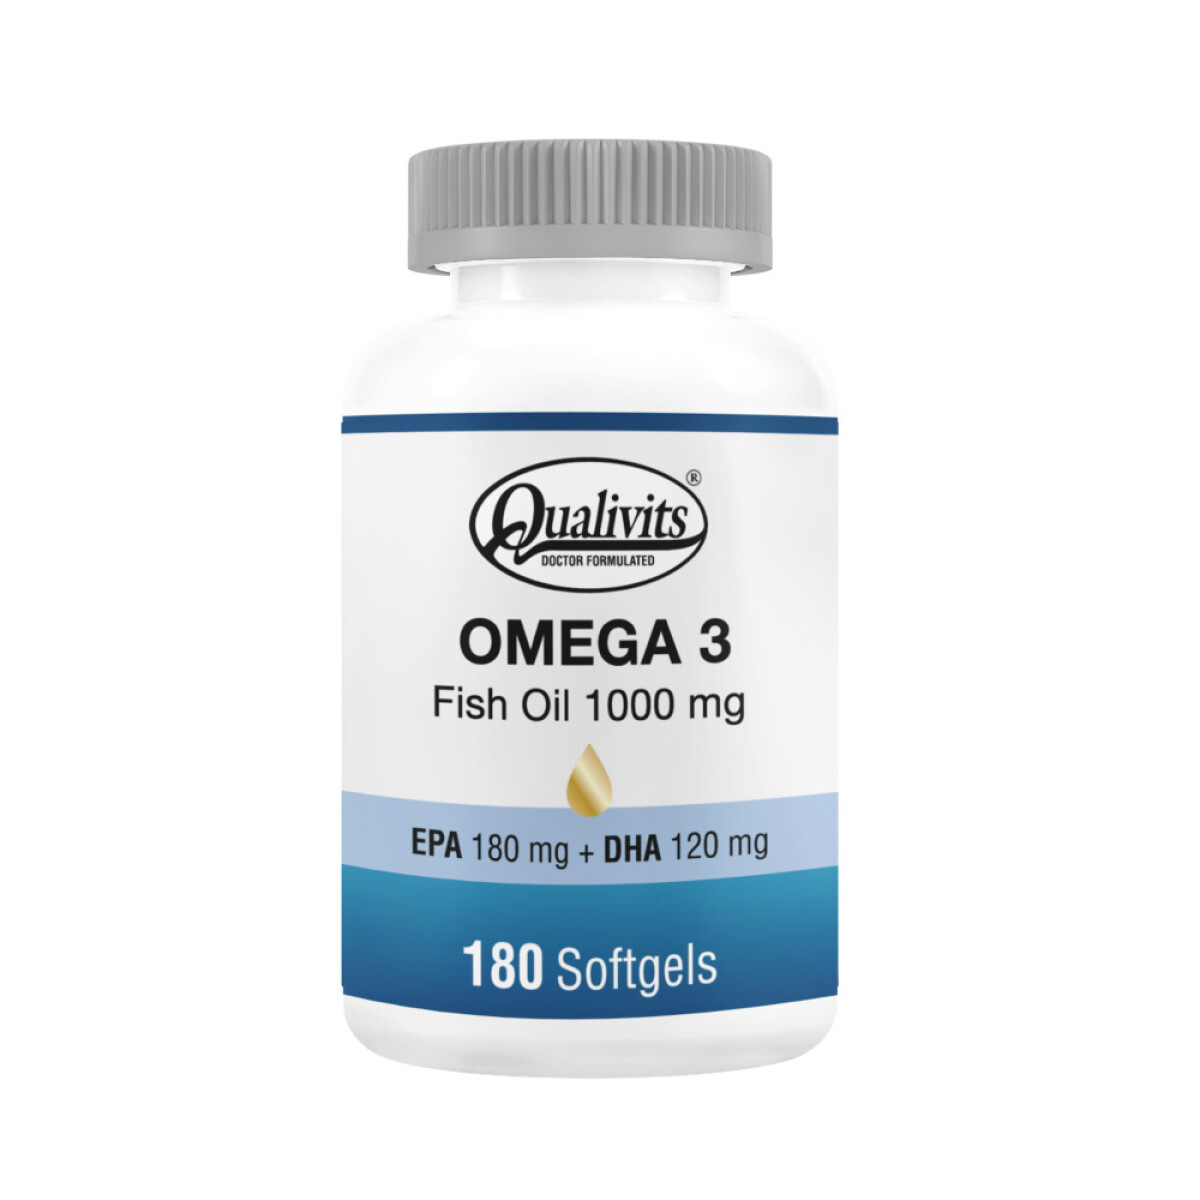 OMEGA 3 - FISH OIL QUALIVITS 1000 mg x 180 Softgels 